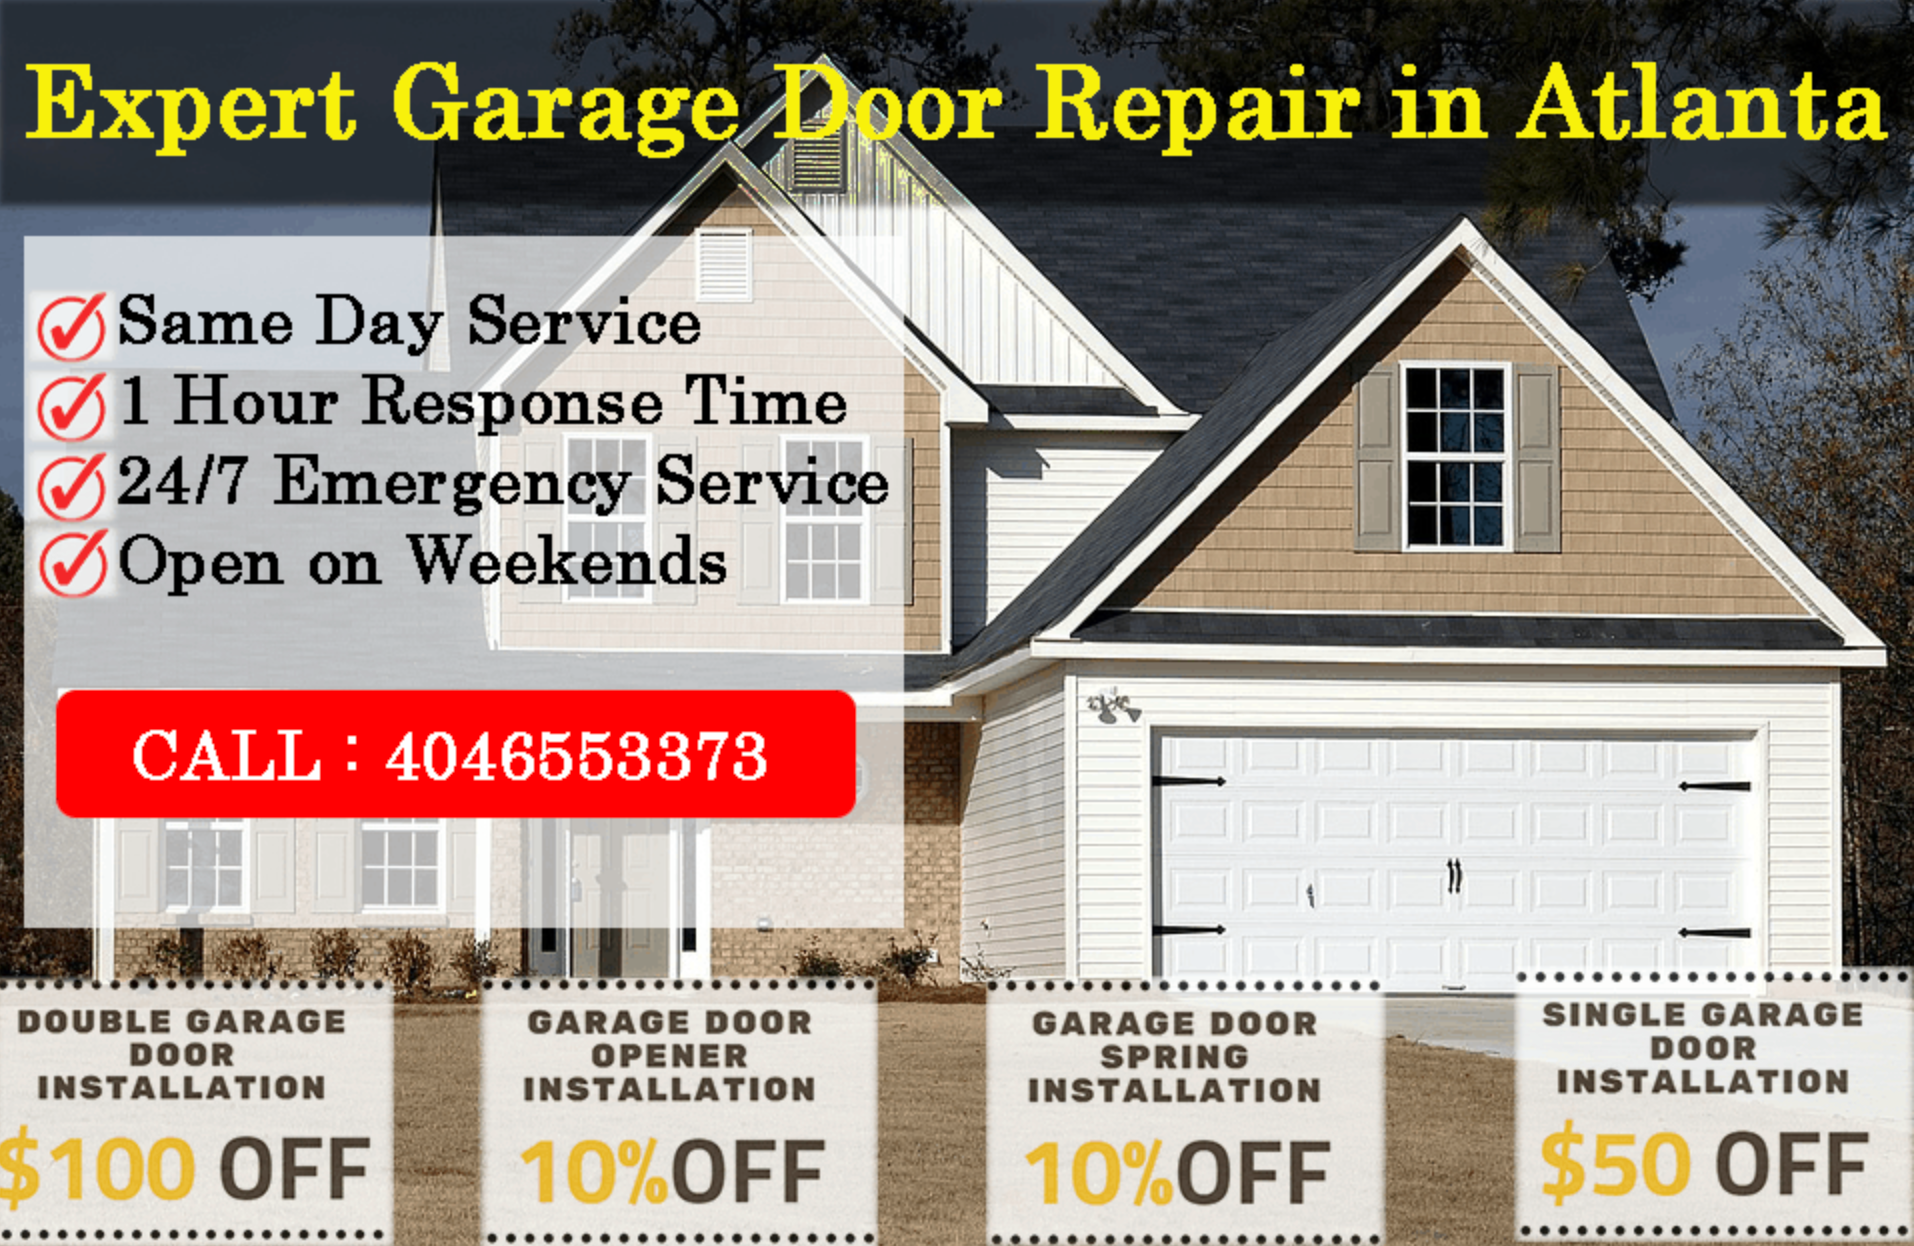 Garage Door Repair and Installation Service Sandy Springs, GA Deals/Coupons